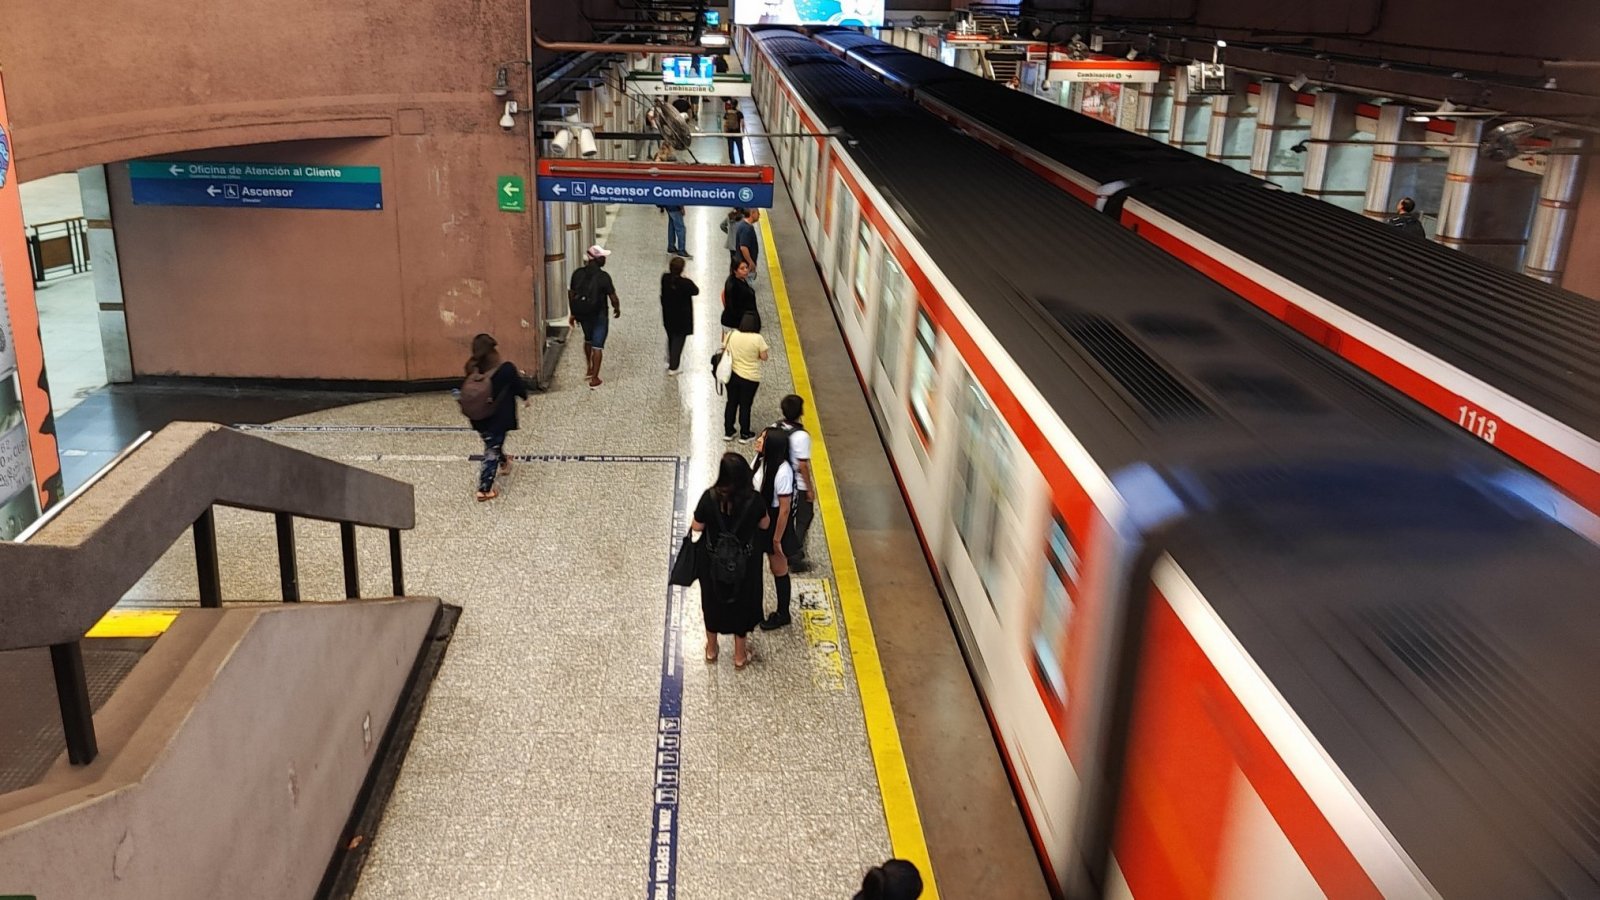 Metro de Santiago llegando al andén, con gente esperando.